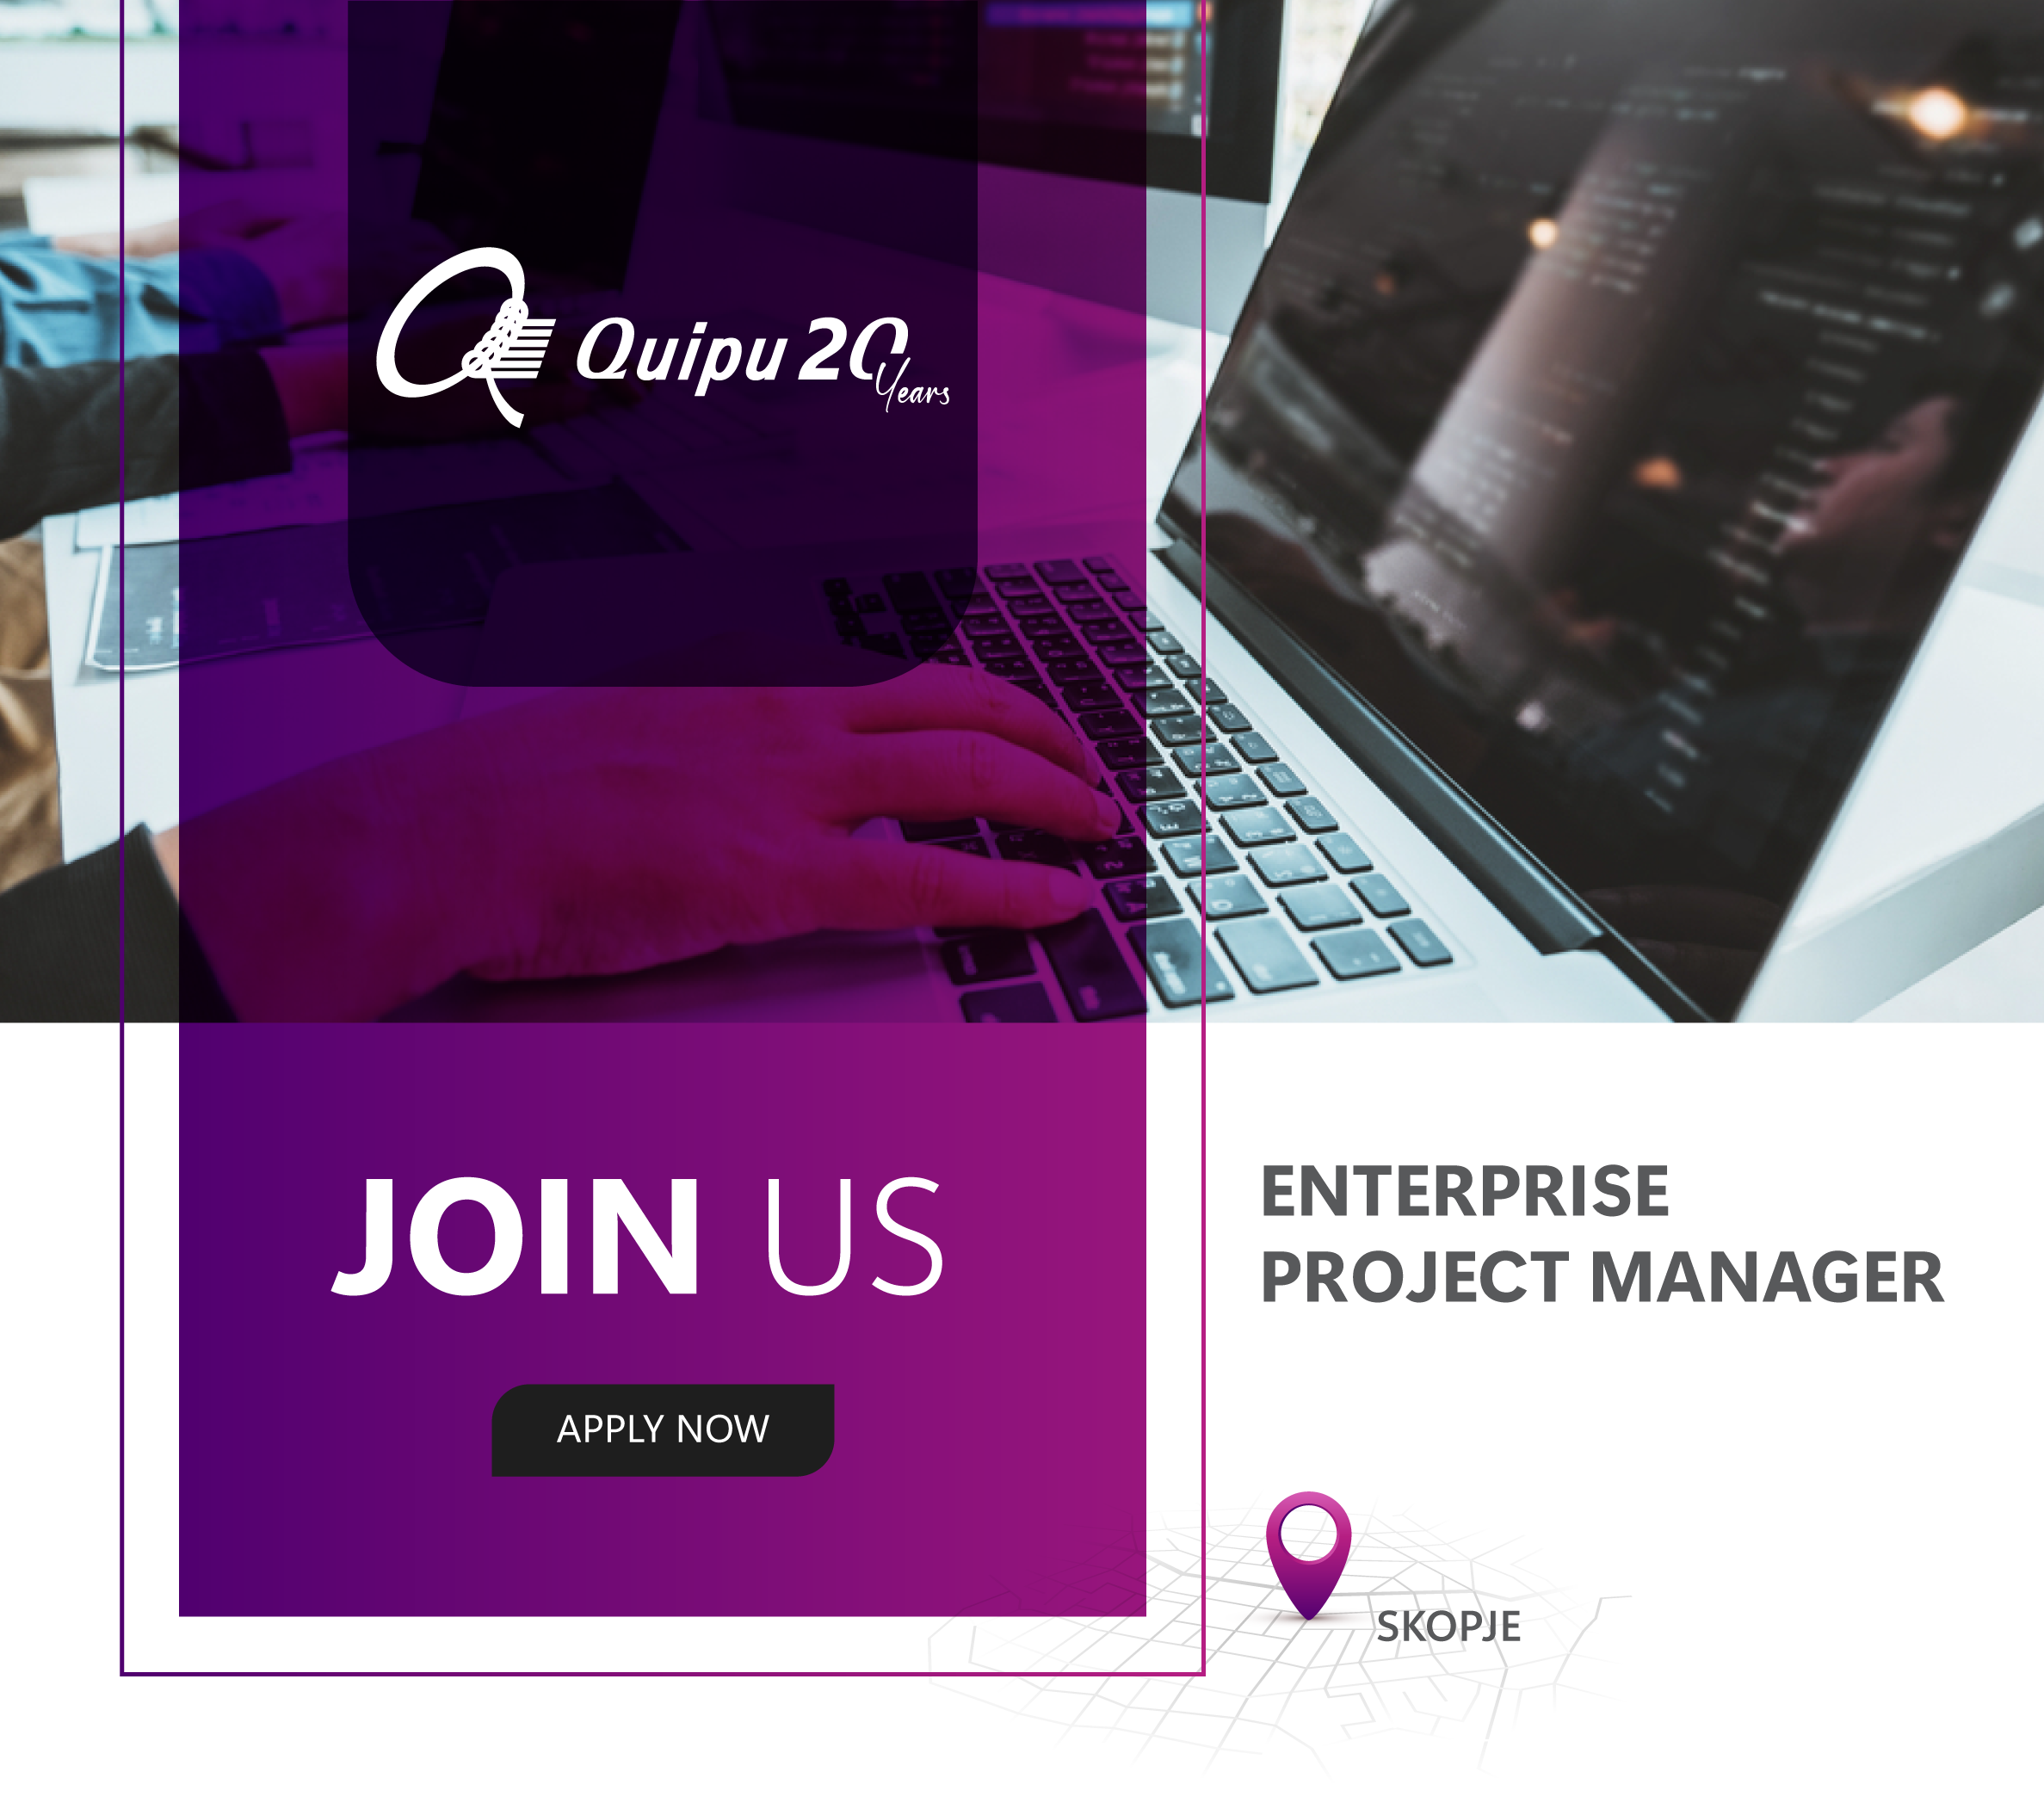 Enterprise Project Manager – Skopje